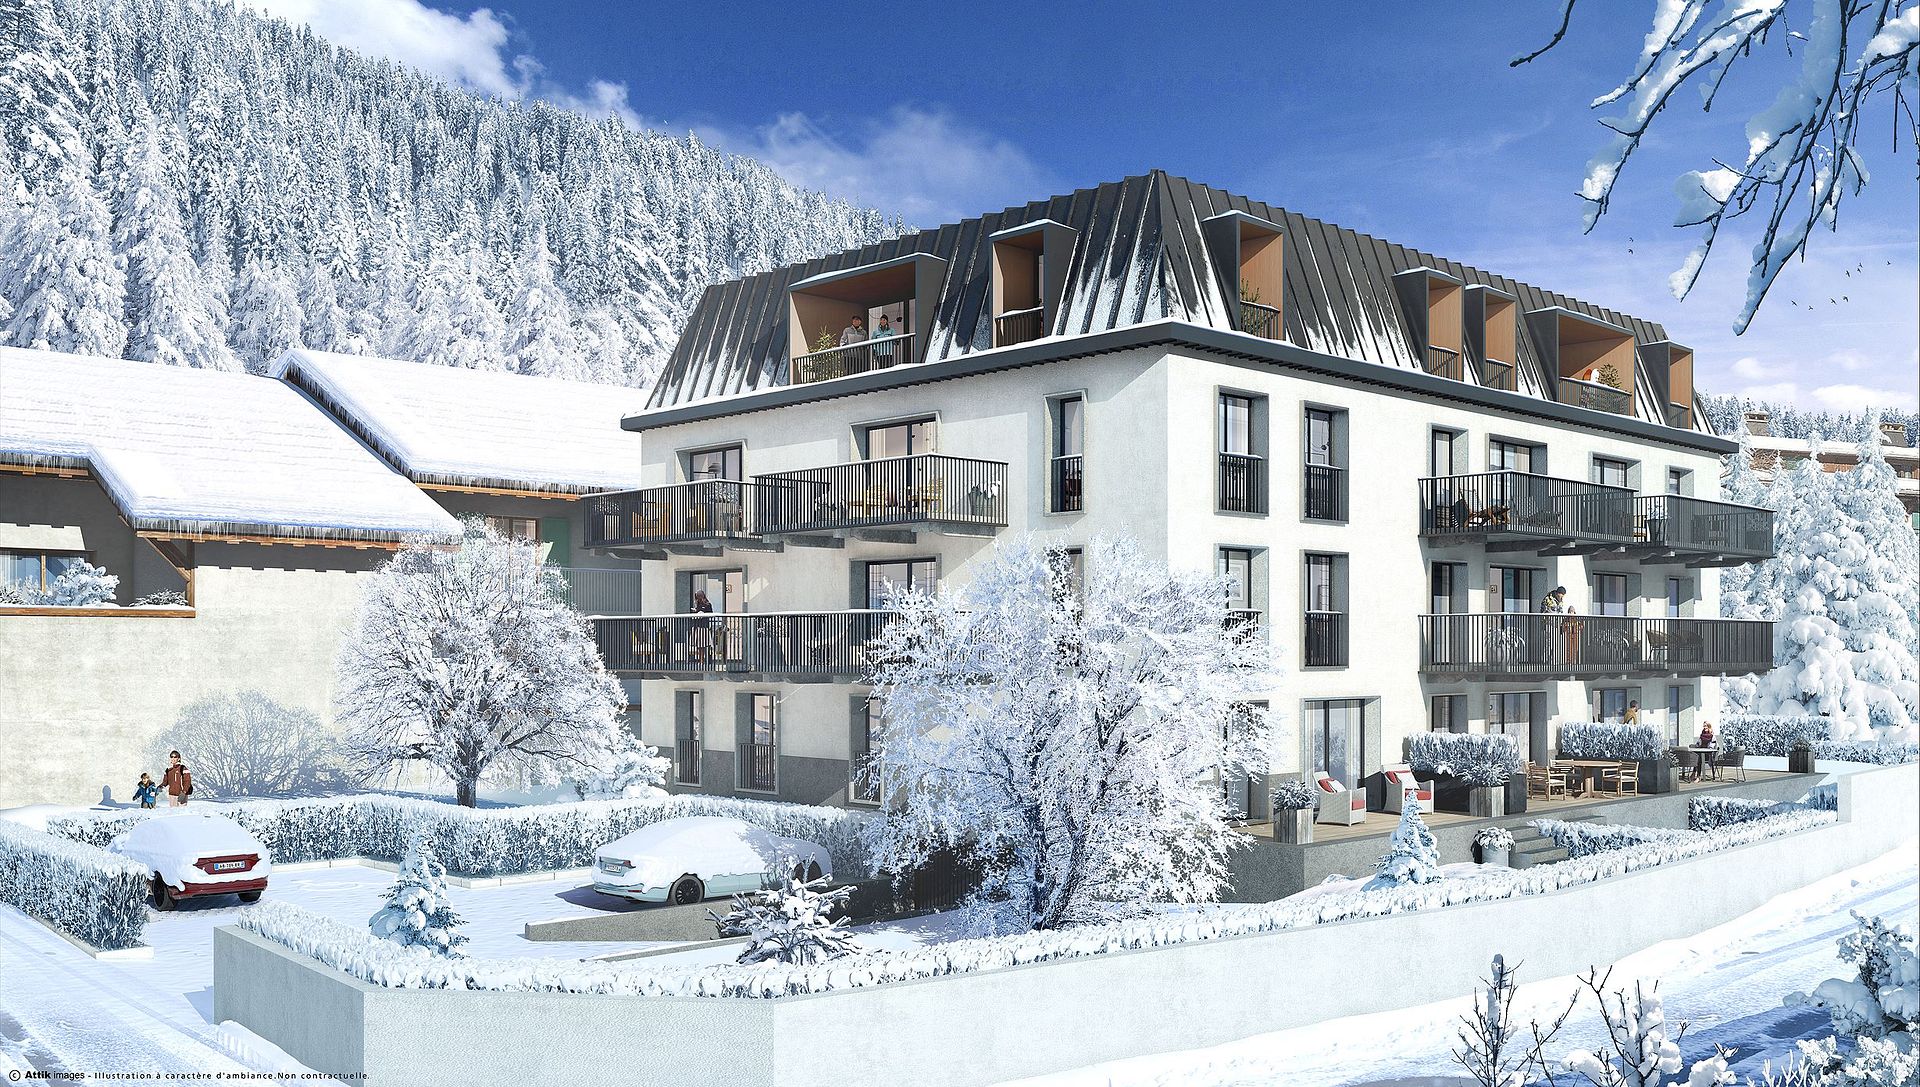  cama Empreendimento novo para venda em Chamonix Mont Blanc, Alpes franceses